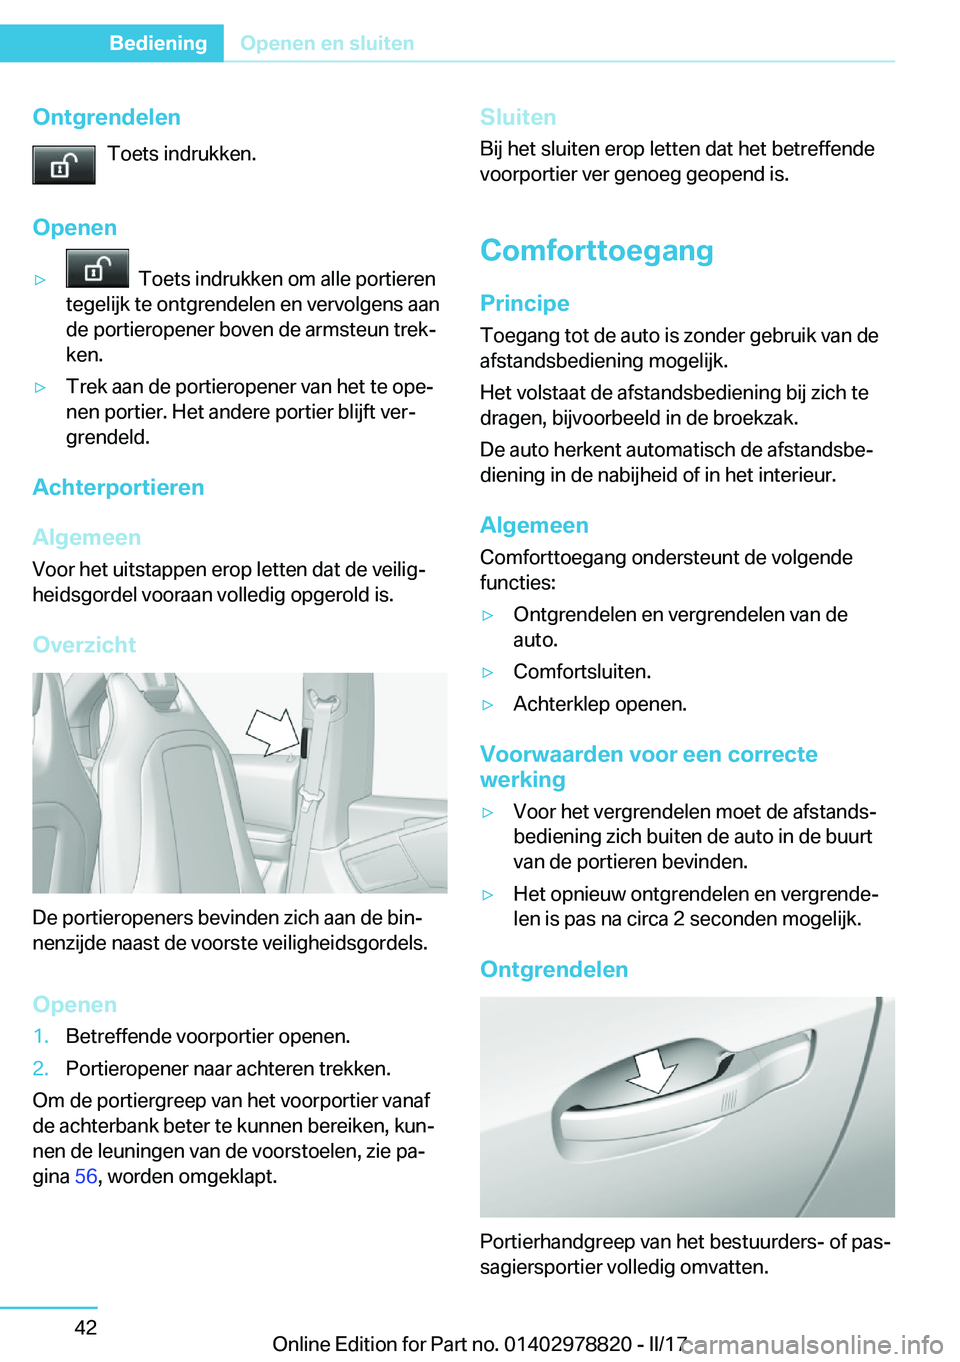 BMW I3 2017  Instructieboekjes (in Dutch) �O�n�t�g�r�e�n�d�e�l�e�n�T�o�e�t�s� �i�n�d�r�u�k�k�e�n�.
�O�p�e�n�e�n'y� � �T�o�e�t�s� �i�n�d�r�u�k�k�e�n� �o�m� �a�l�l�e� �p�o�r�t�i�e�r�e�n
�t�e�g�e�l�i�j�k� �t�e� �o�n�t�g�r�e�n�d�e�l�e�n� �e�n